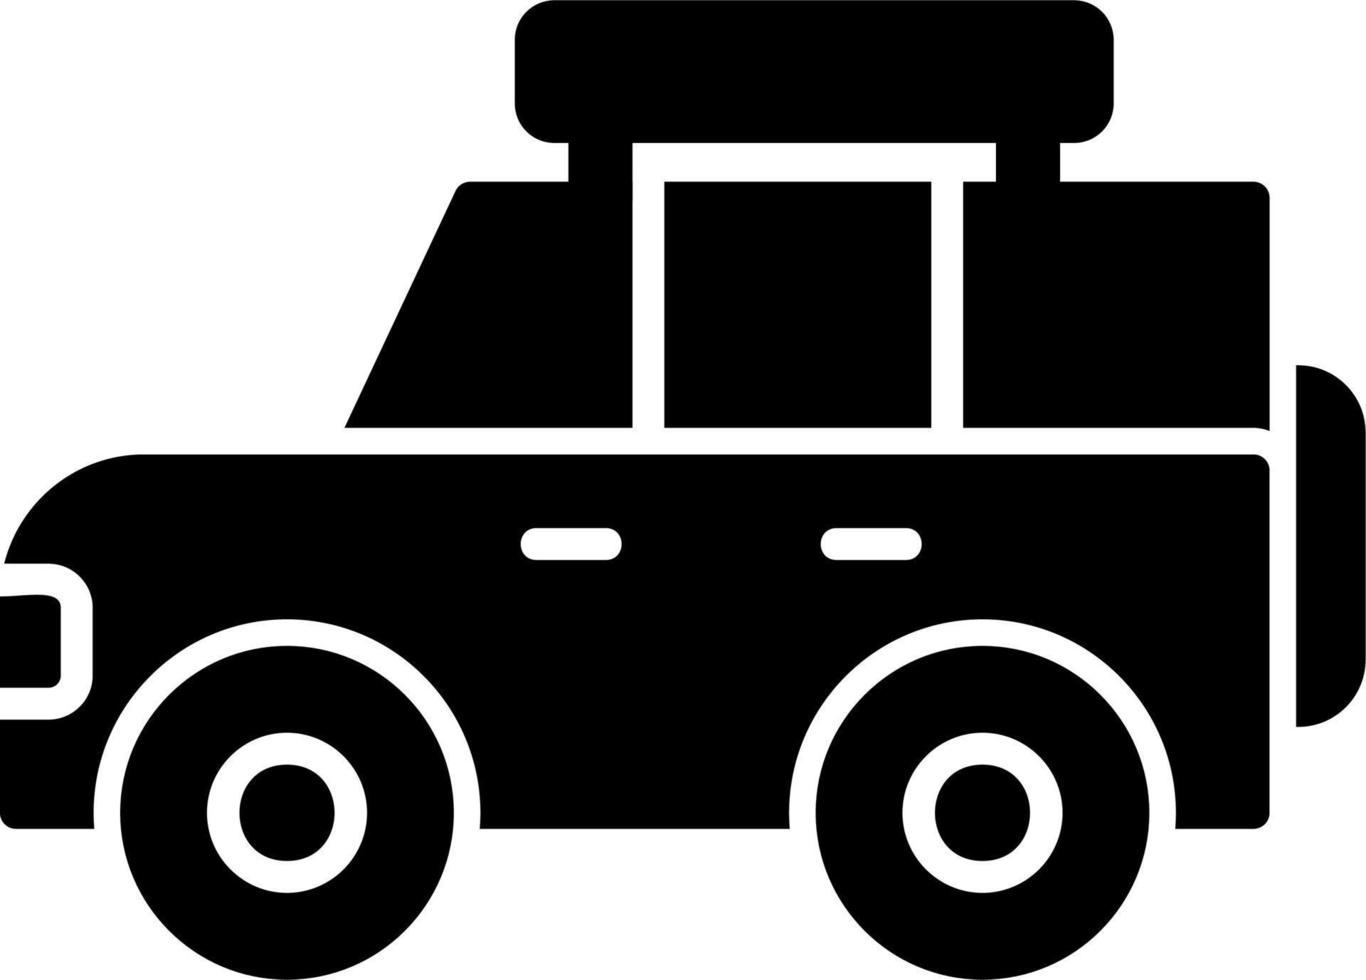 icône de vecteur de voiture